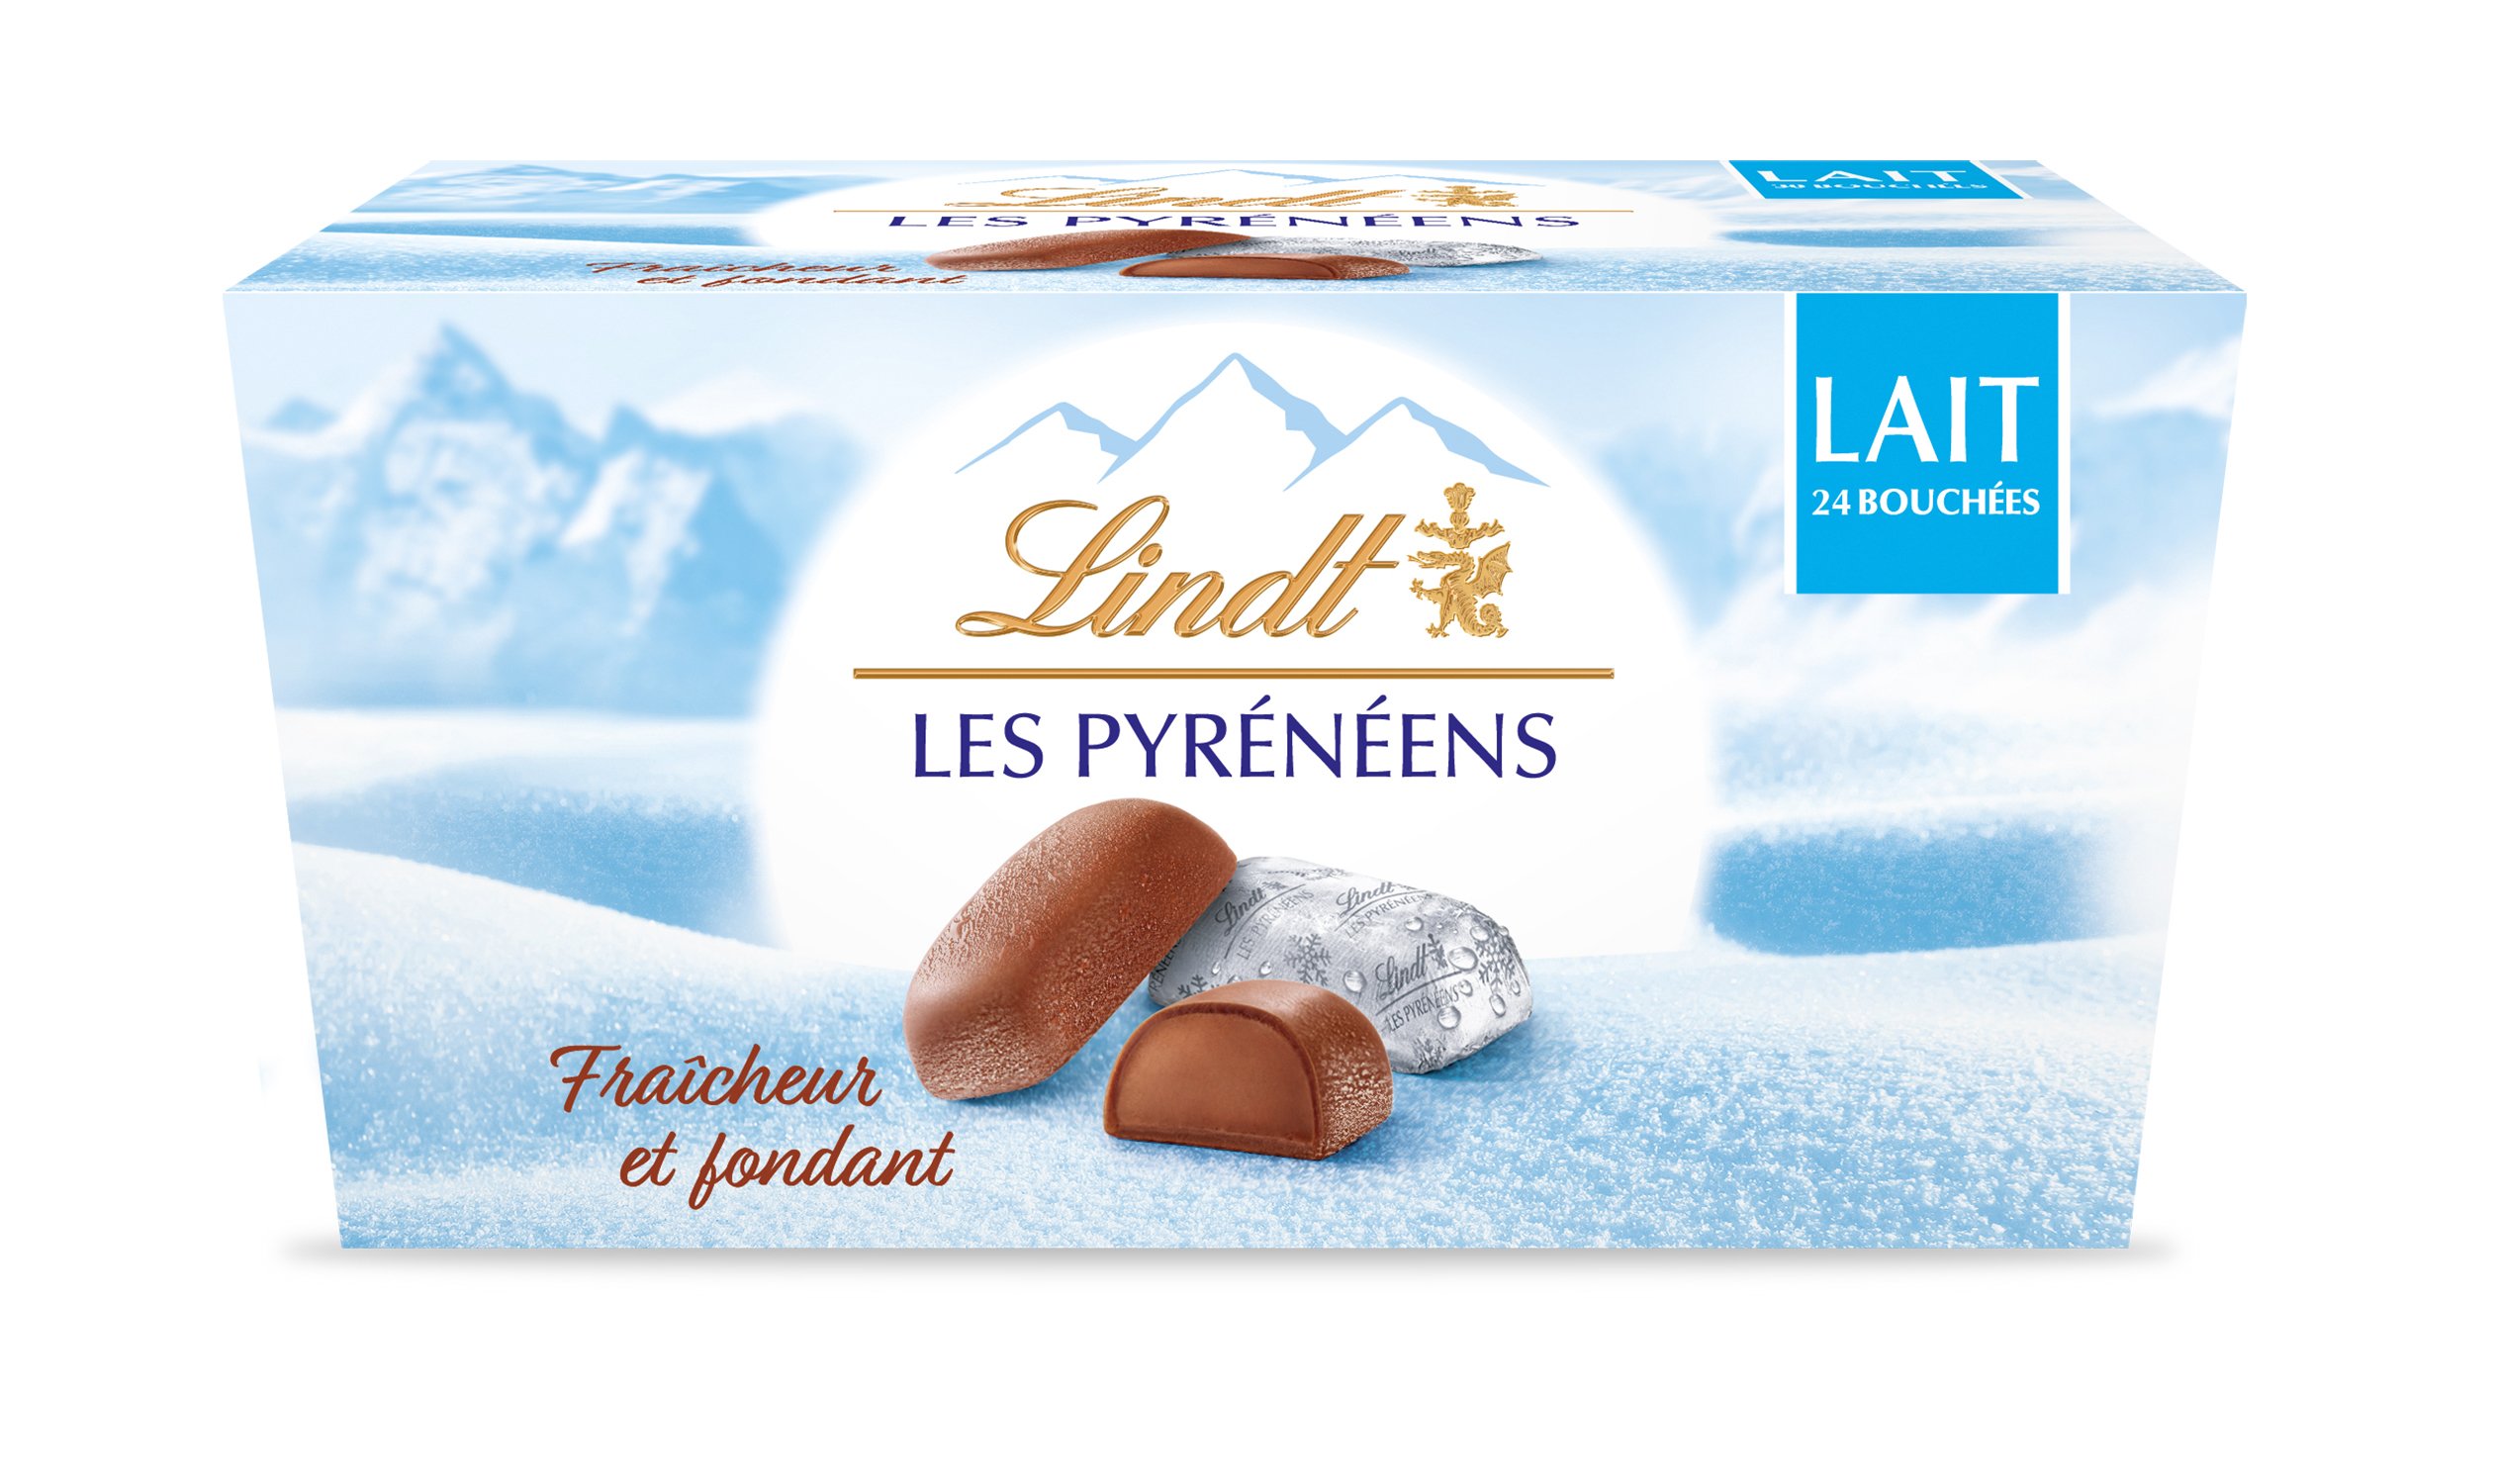 Pralinés Marché de Noël Lindt - Chocolat sucreries - Actions